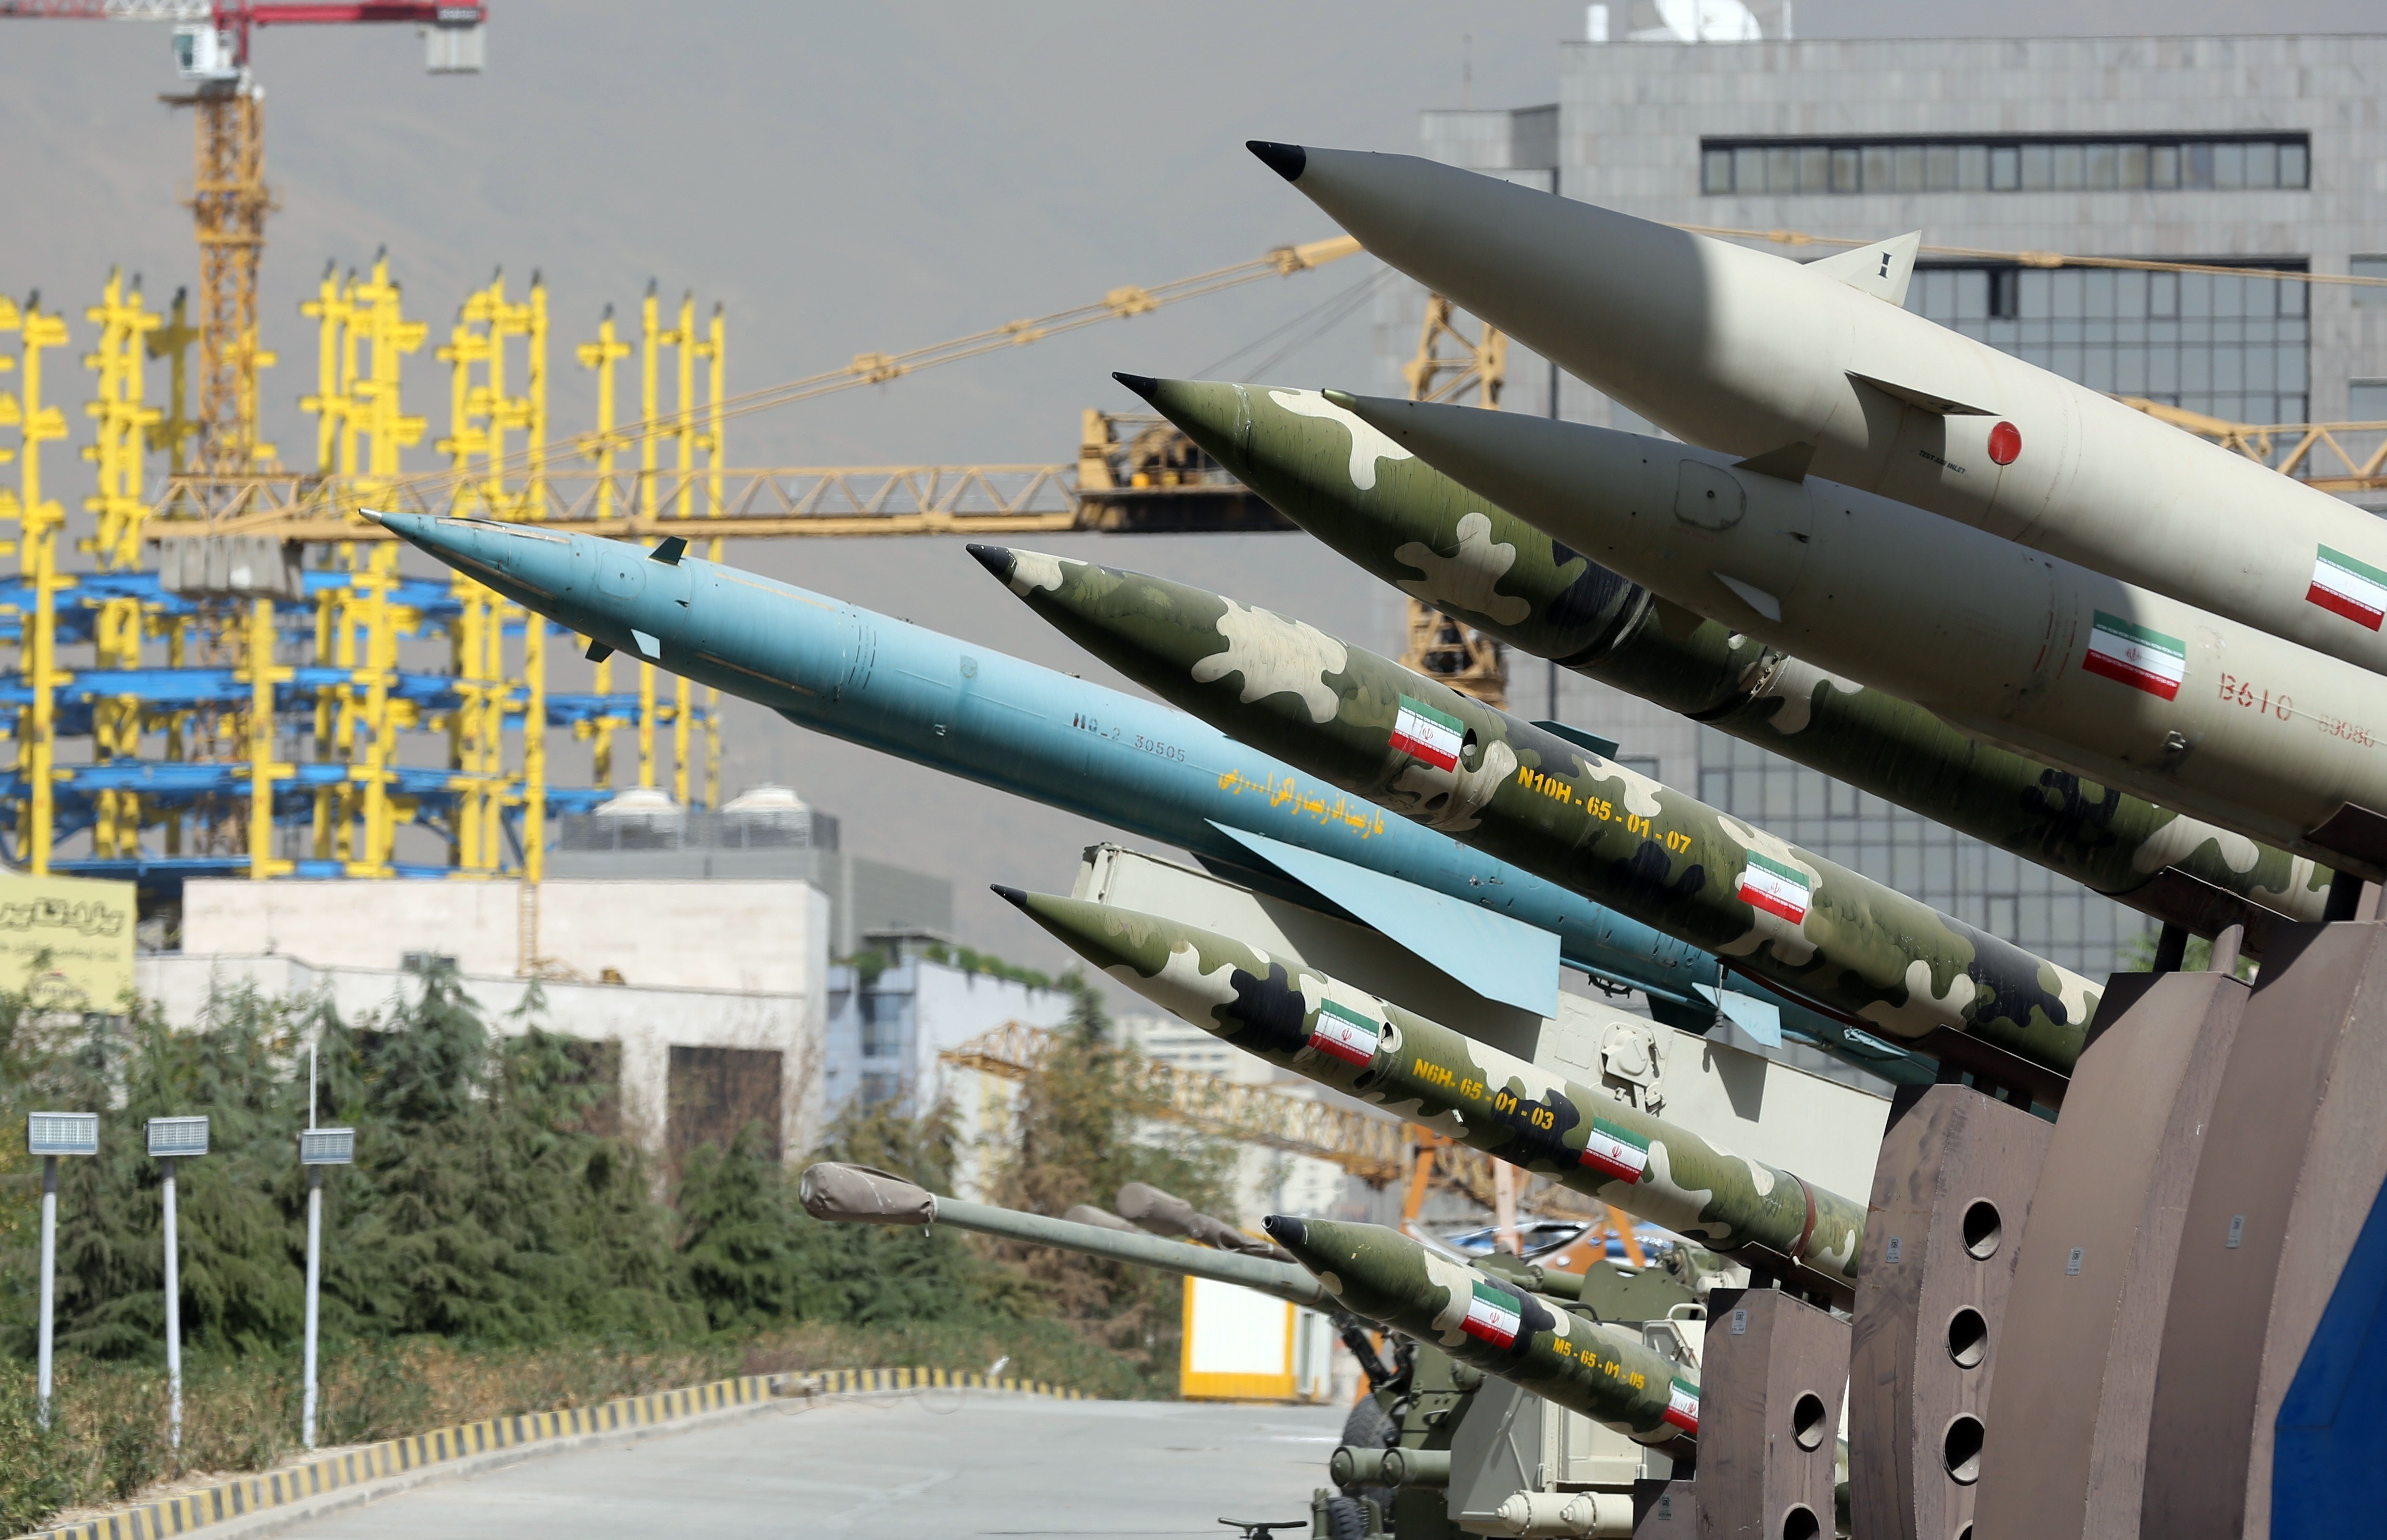 القادة العسكريون الأمريكيون قلقون من قدرة إيران الصاروخية

